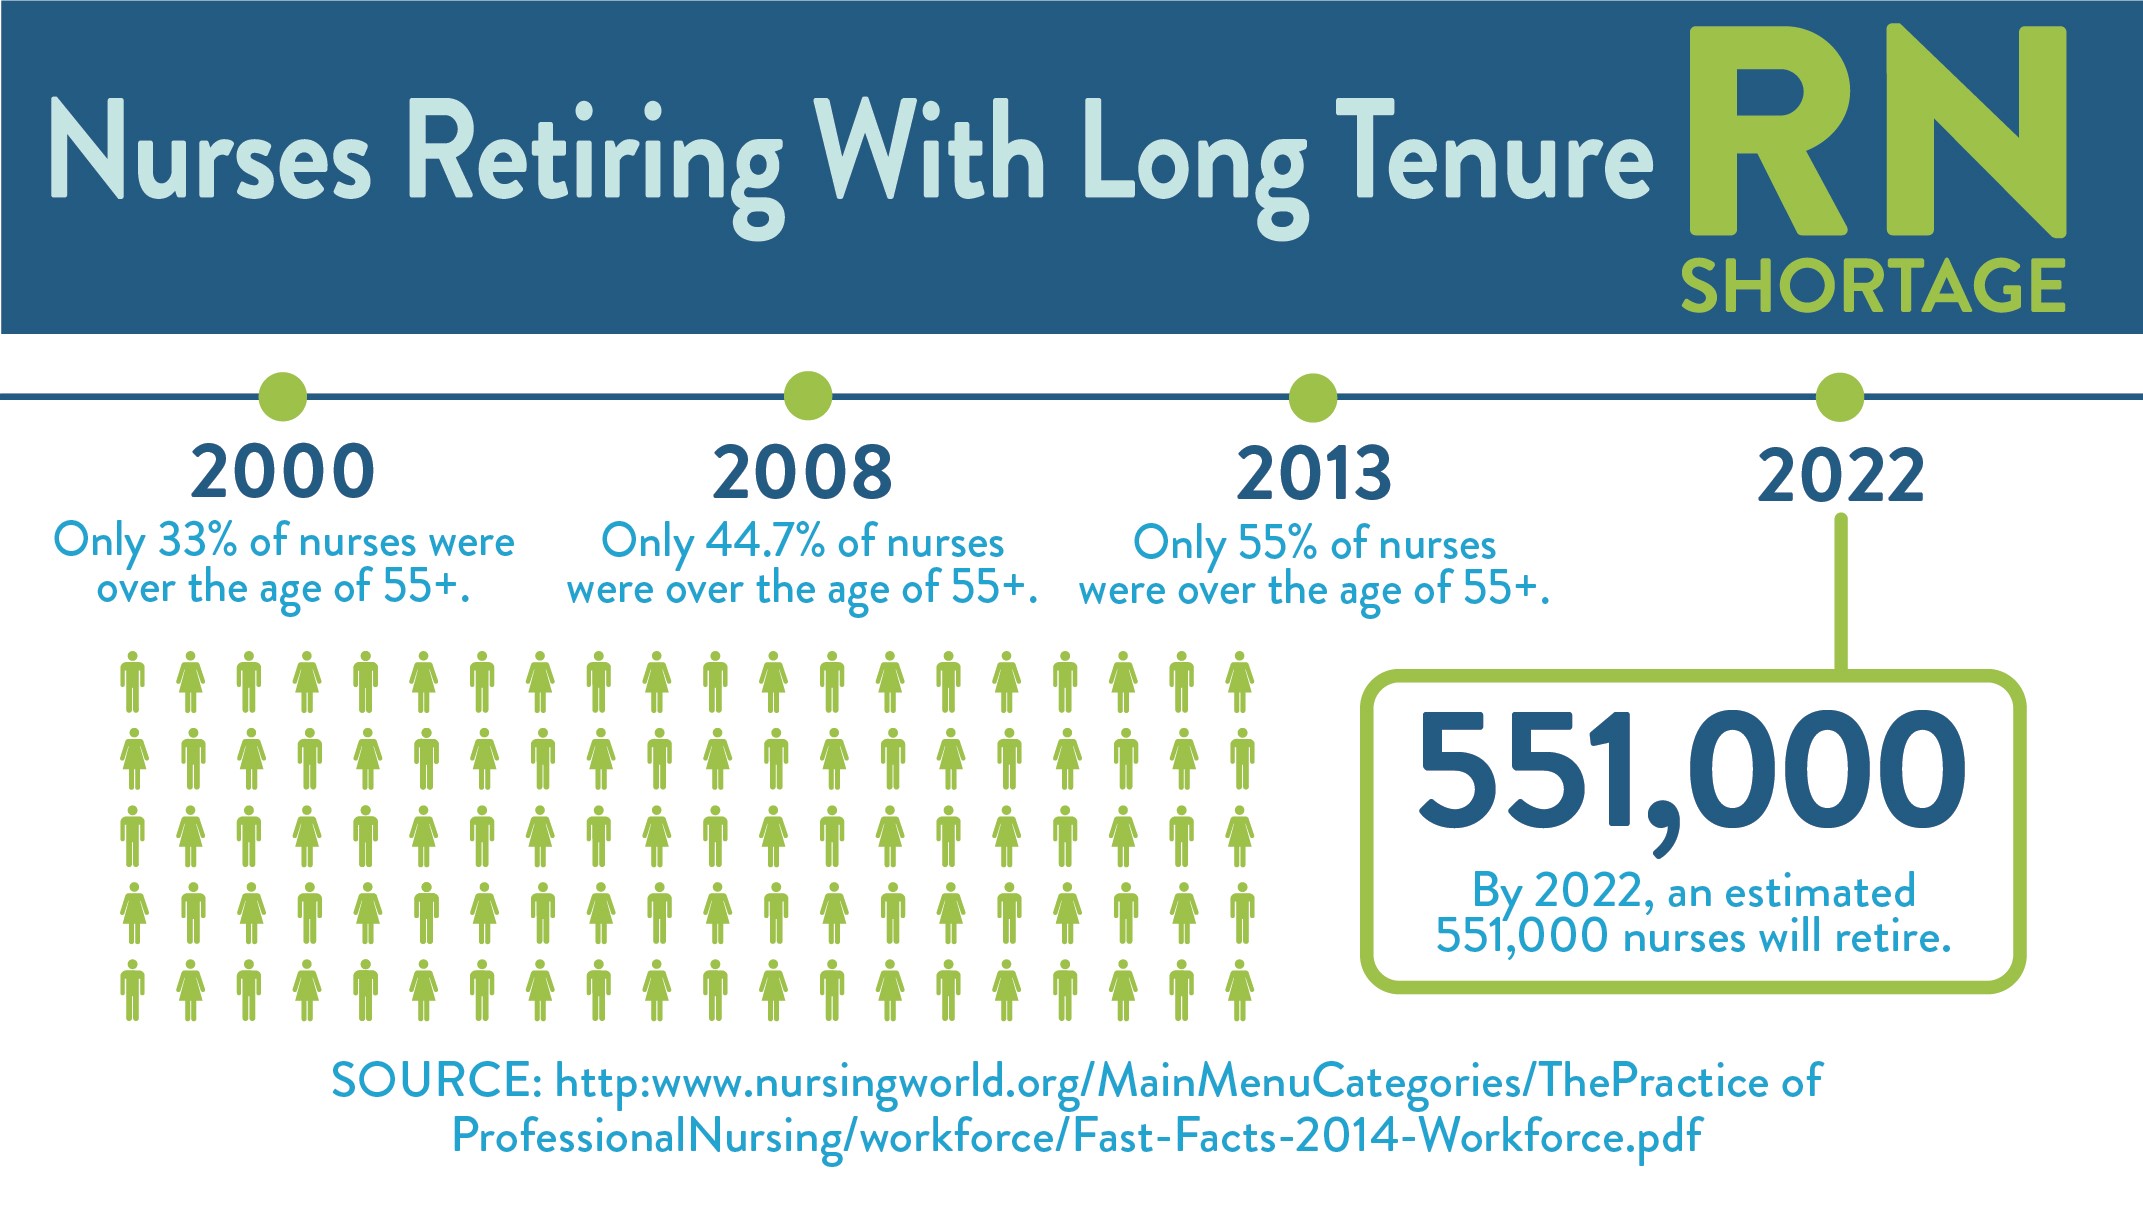 Nurses Retiring with Long Tenure in the US